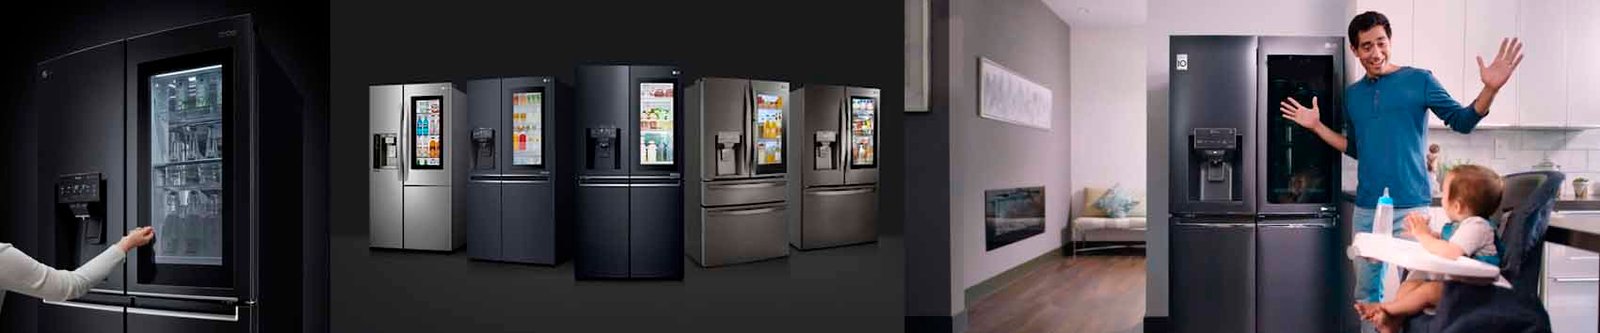 Assistencia técnica LG refrigeradores Jardim Aeroporto